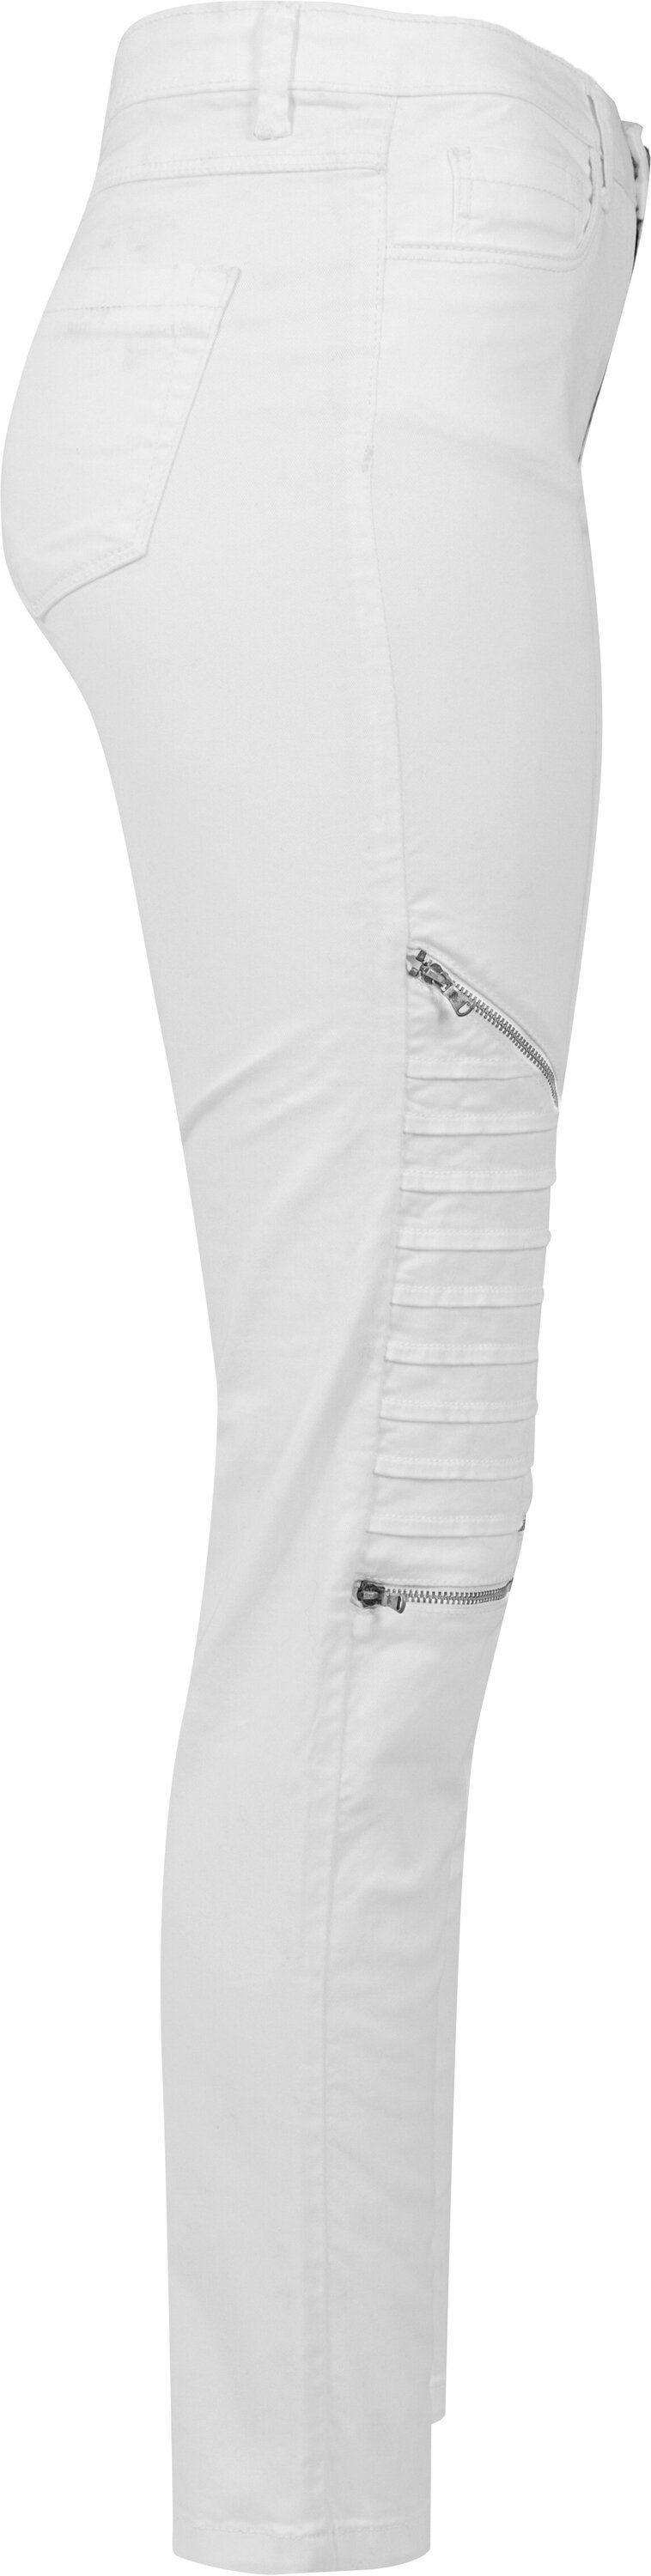 Ladies (1-tlg) Biker white URBAN Damen Pants Jeans CLASSICS Stretch Bequeme